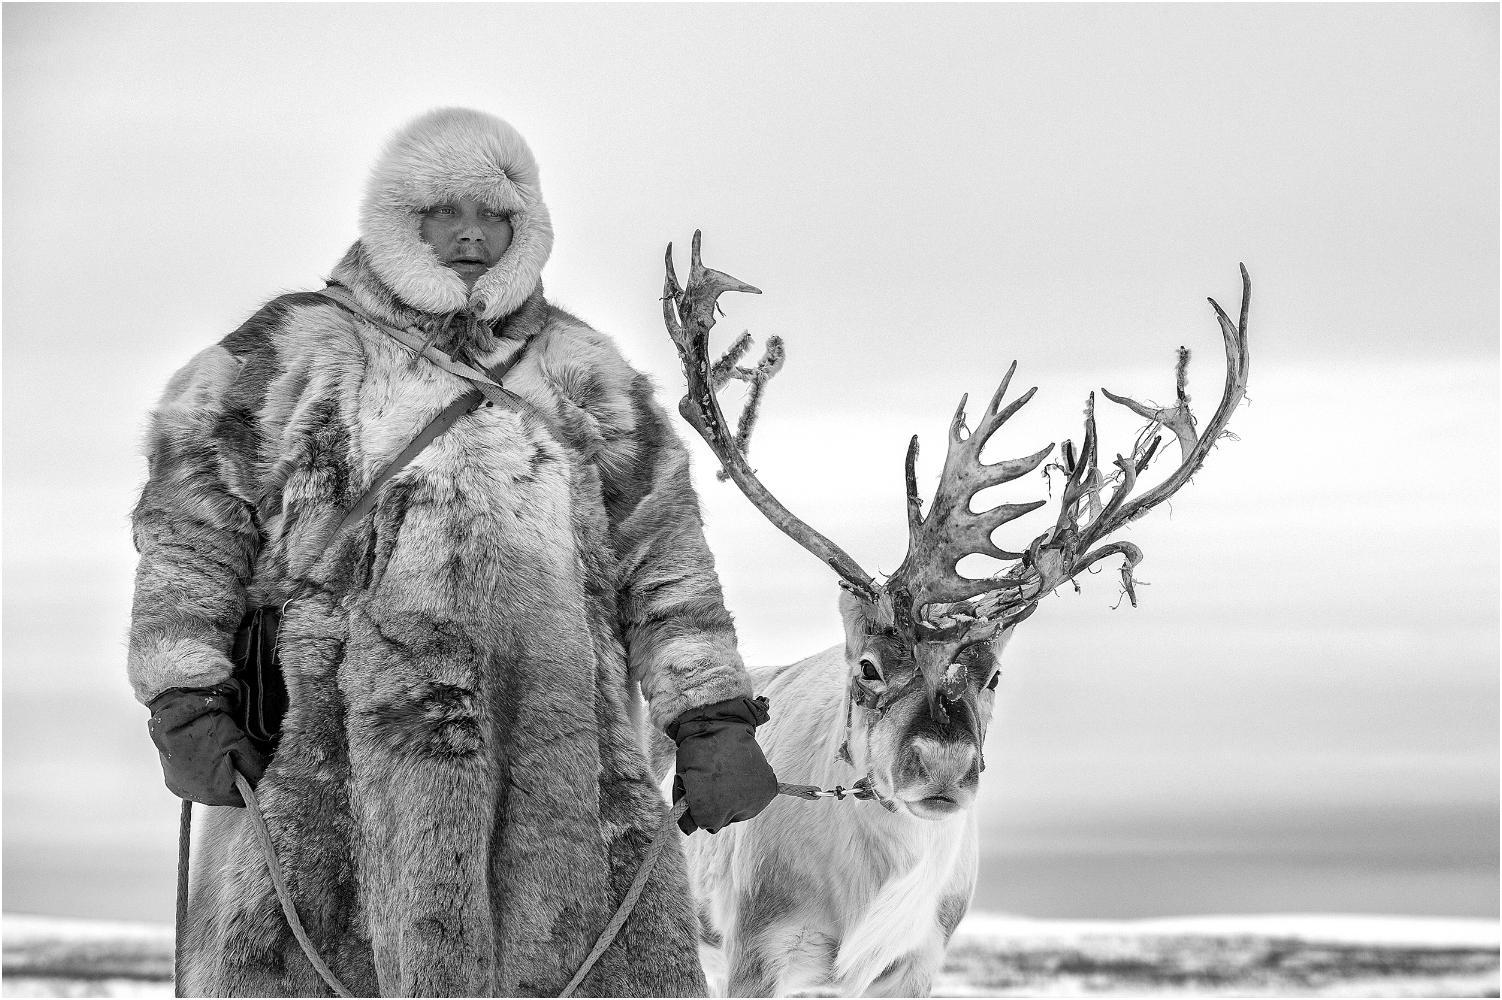 Zagolin Sandra "Reindeer herder" (2019)